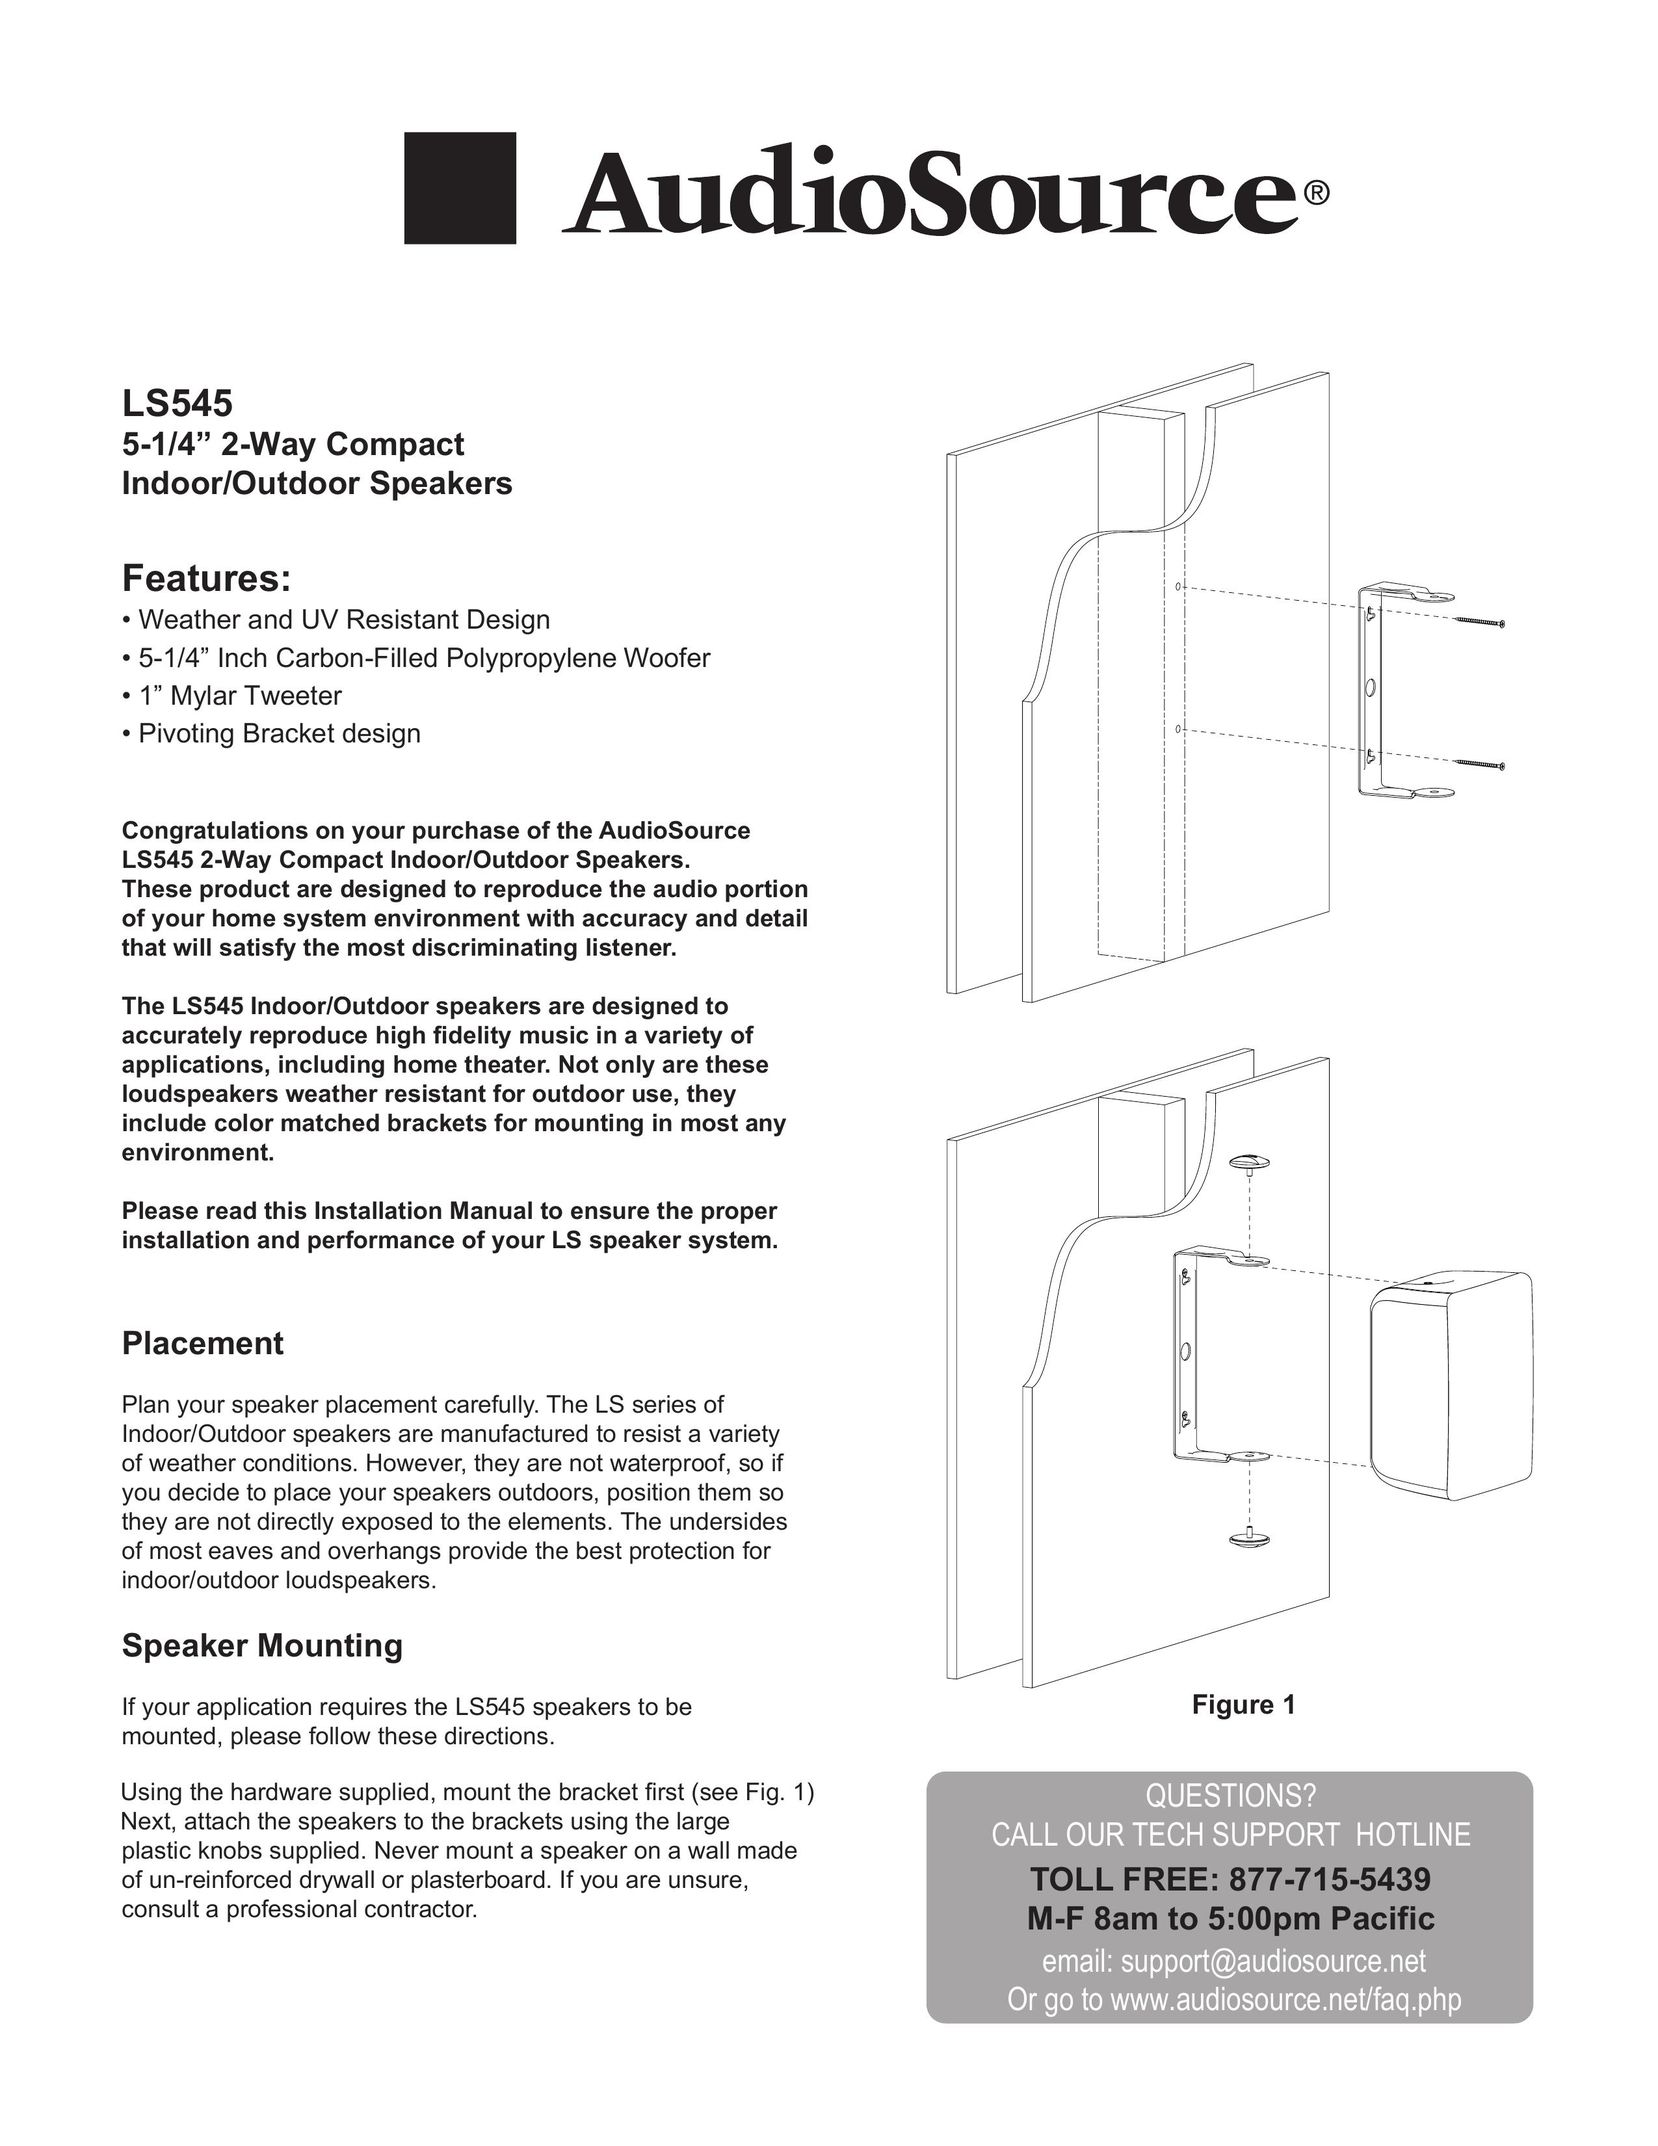 AudioSource 5-1/4" 2-way compact indoor/outdoor speakers Speaker User Manual